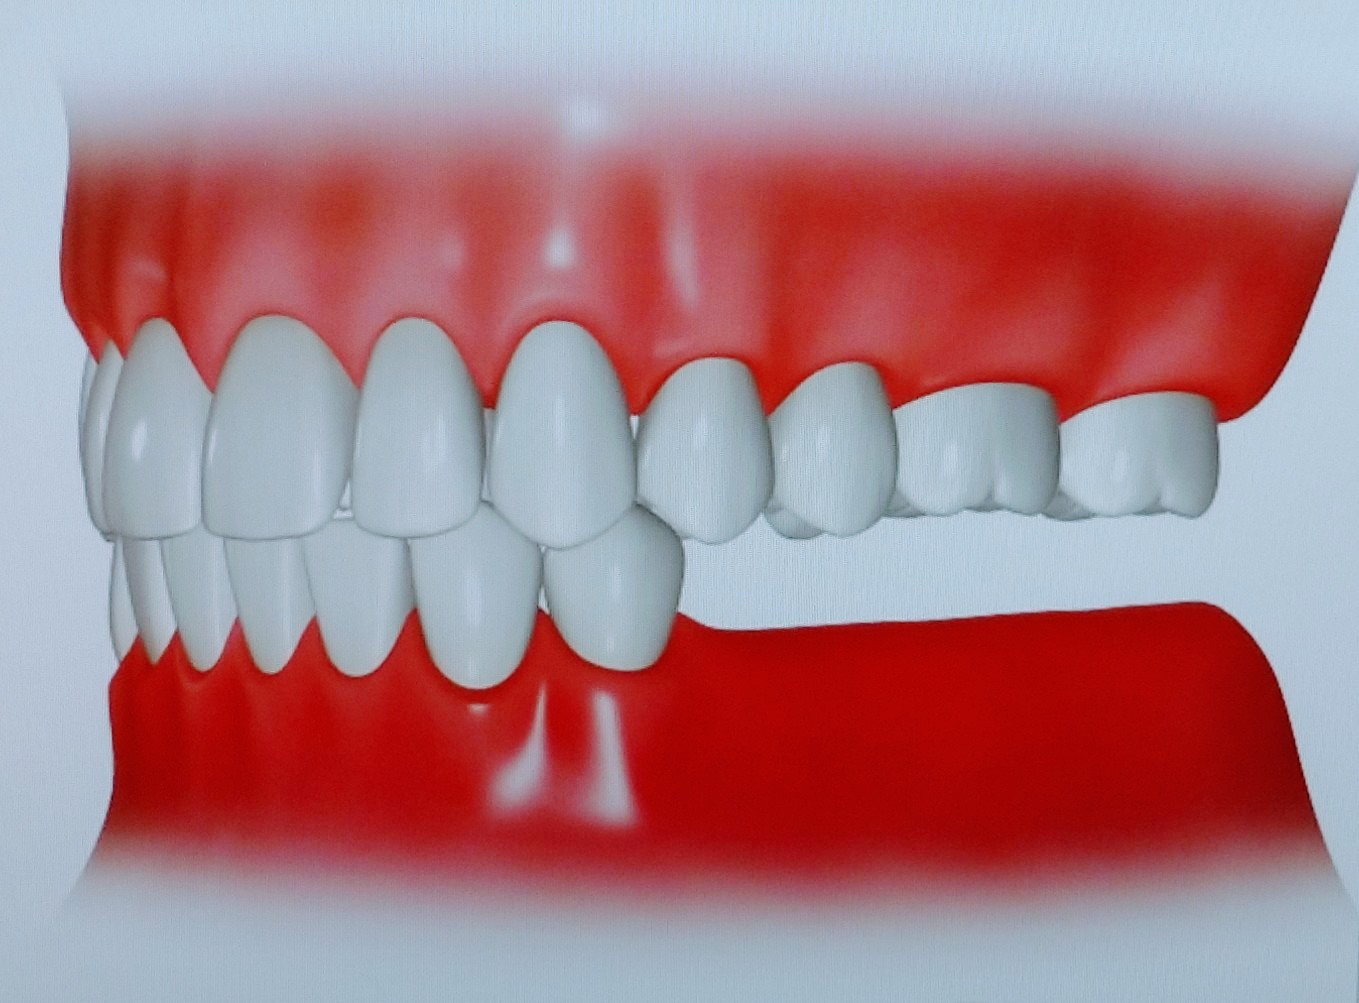 下顎の臼歯部歯牙が欠損している状態のイラスト